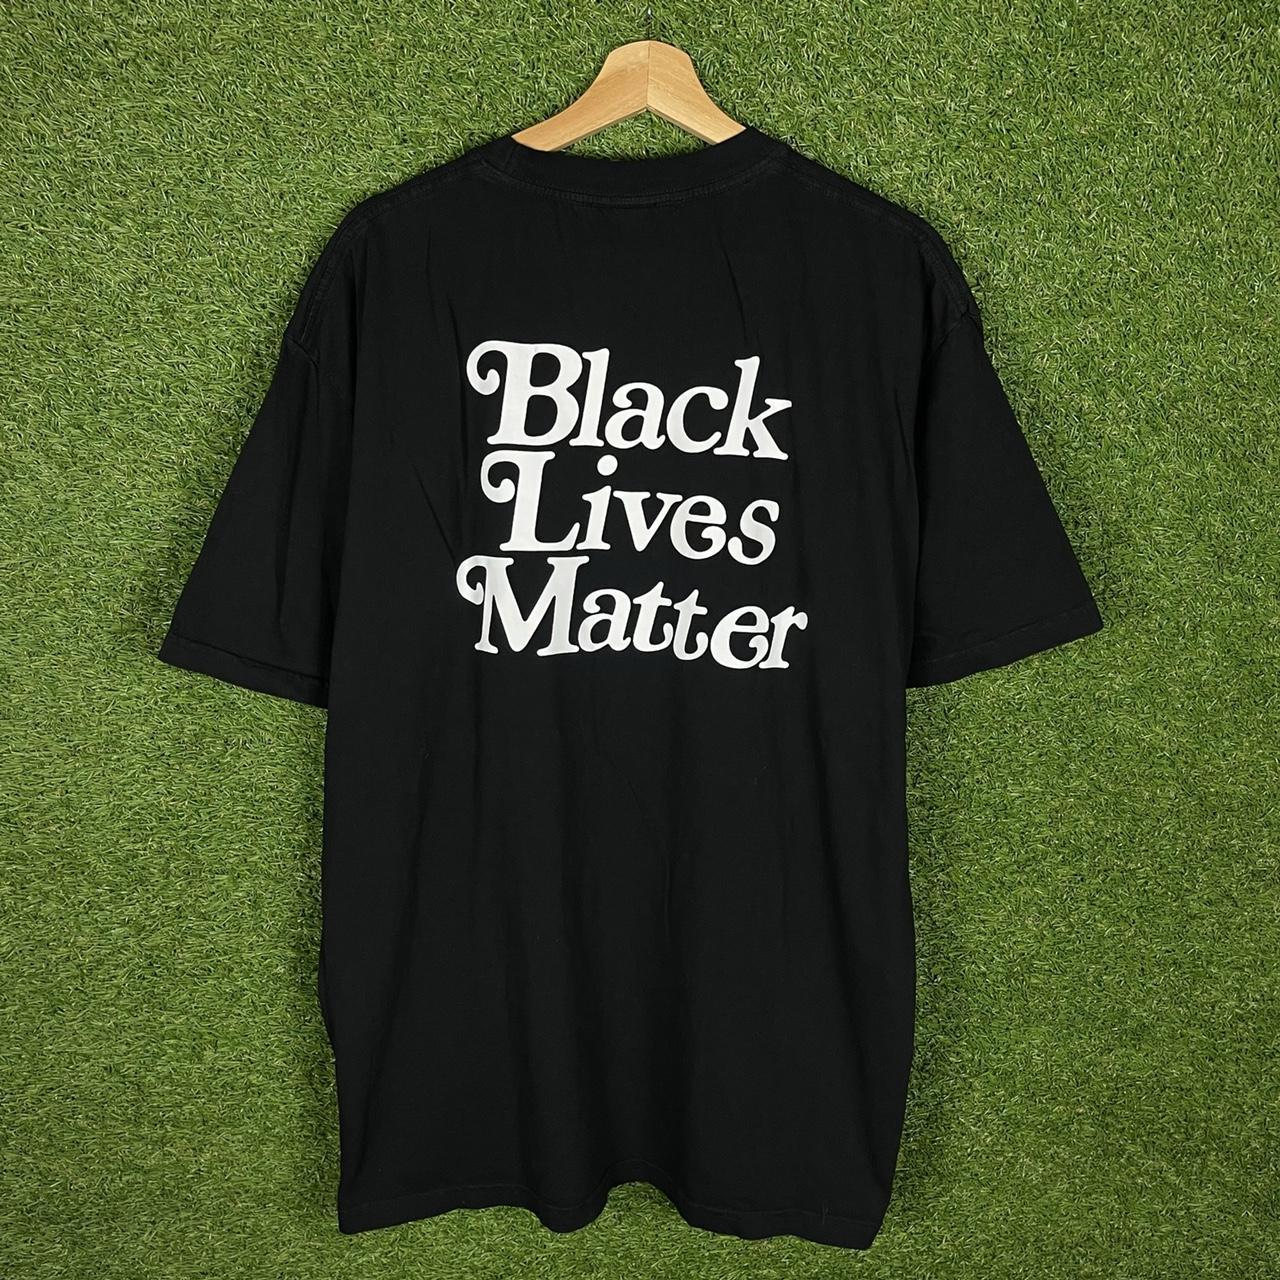 GirlsDon(送料込)Girls Don't Cry Black Lives Matter